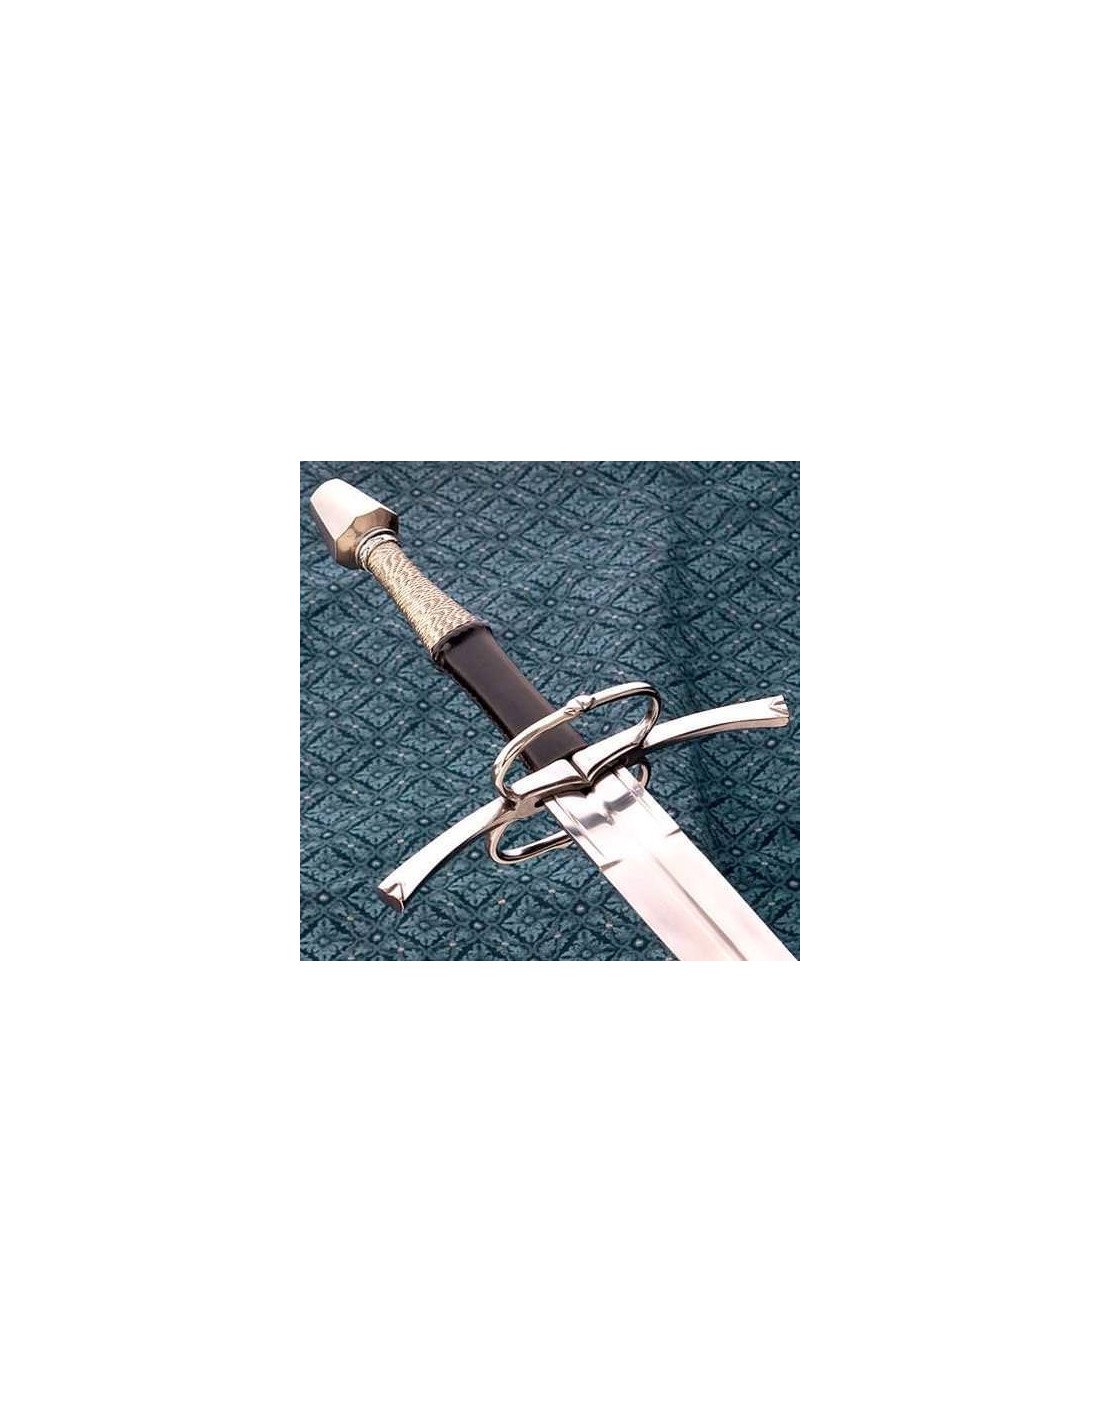 Espada Medieval-Renacimiento larga con anilla y vaina, S. XV ⚔️ Tienda- Medieval